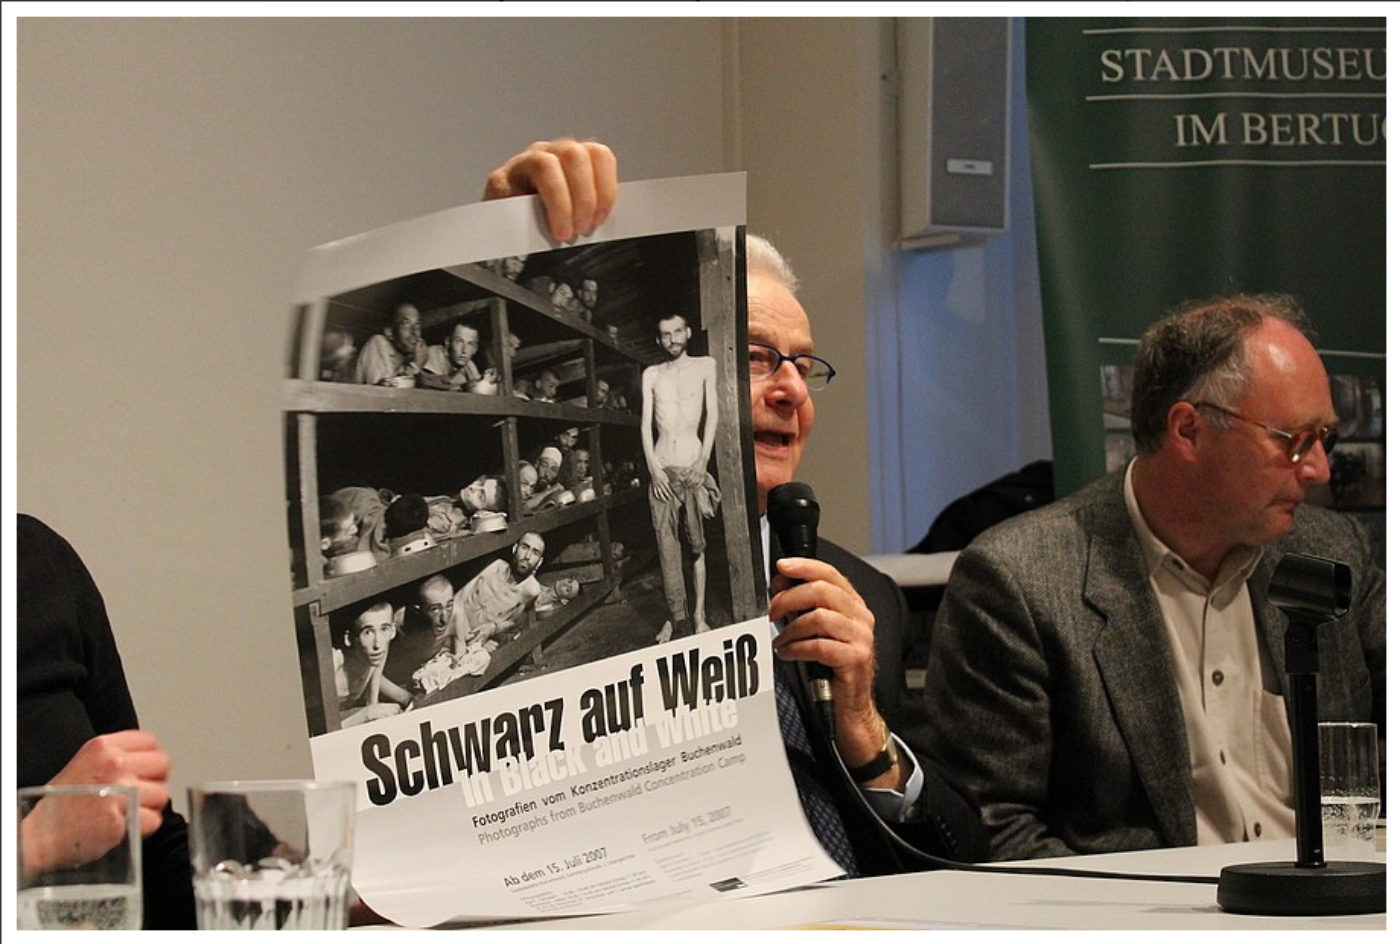 Der Holocaustüberlebende Naftali Fürst hält bei einem Zeitzeugengespräch ein Plakat hoch.